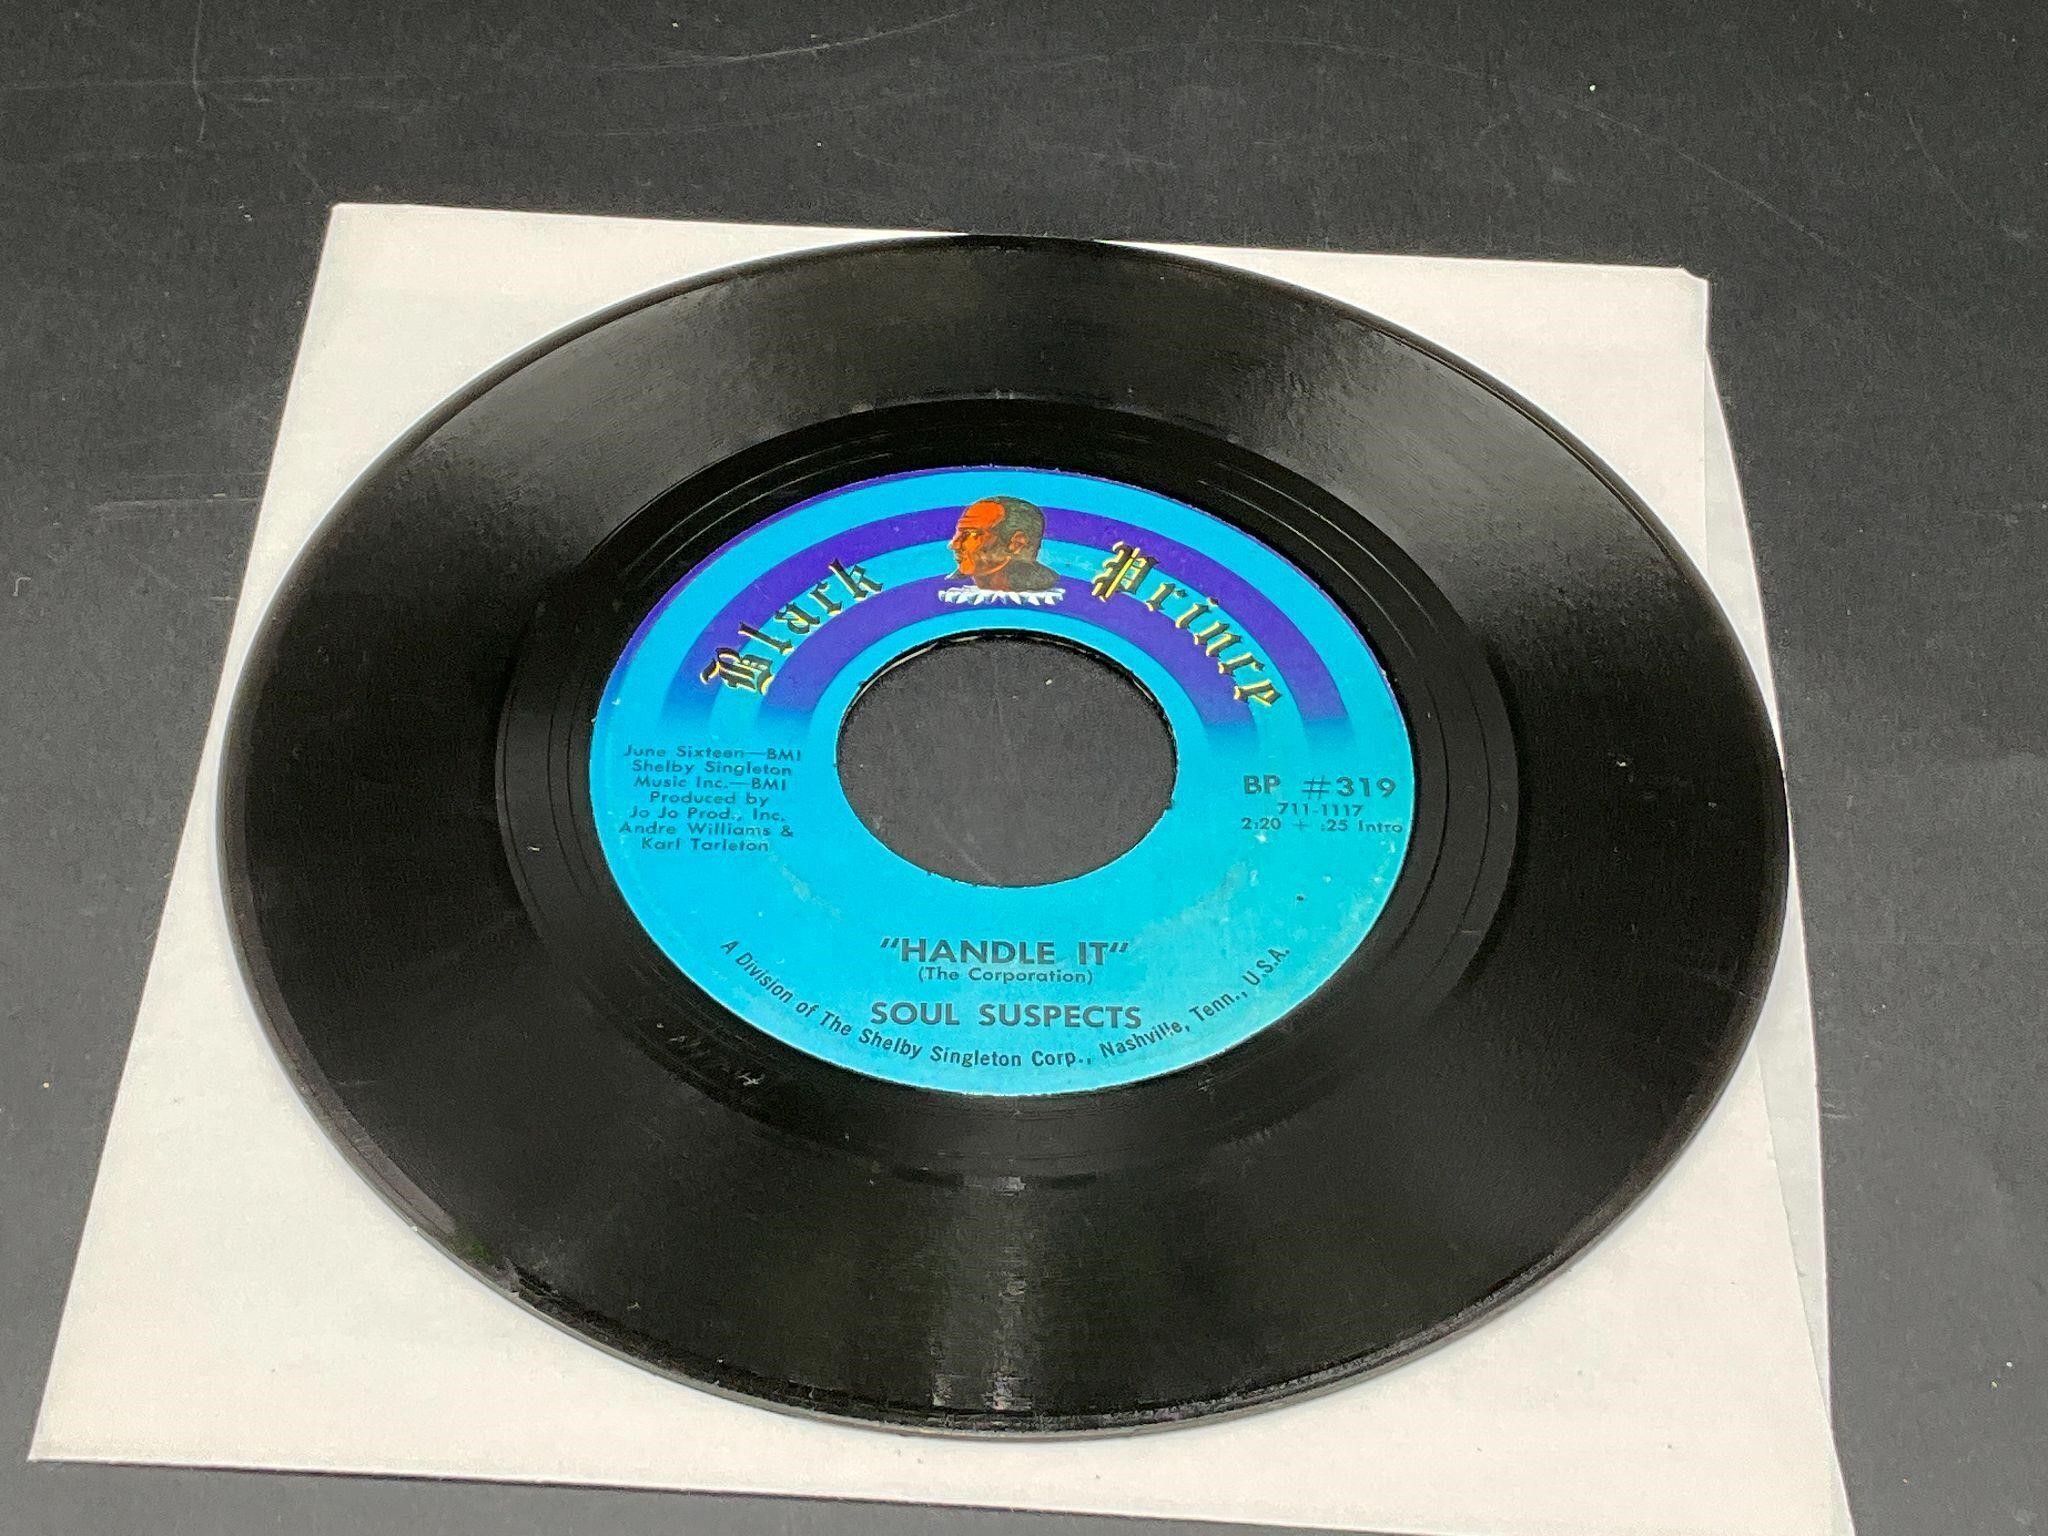 '69 Soul Suspects "Handle It Funky Drop" 7" Single